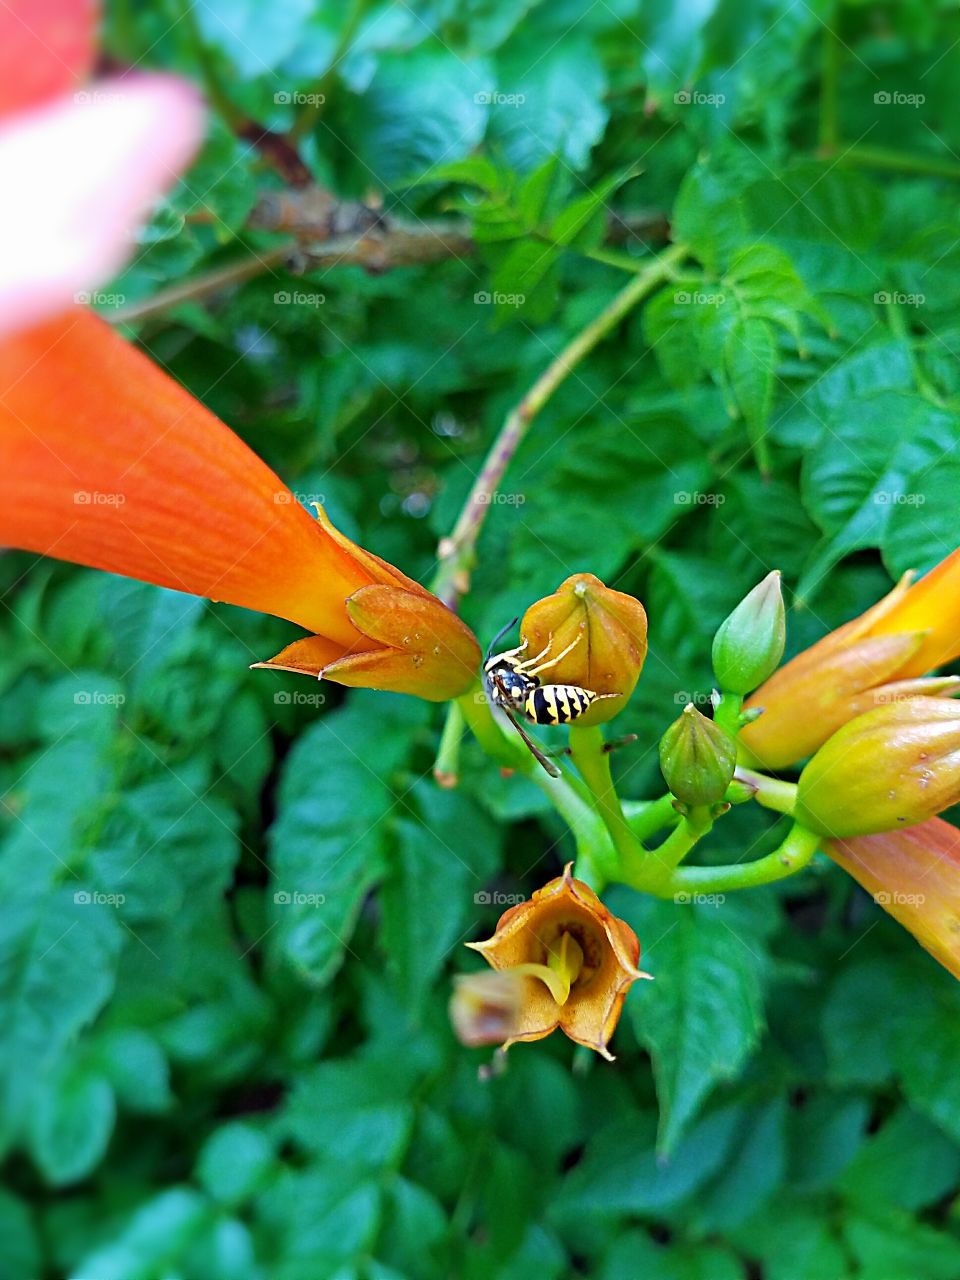 Bee on bloom orange